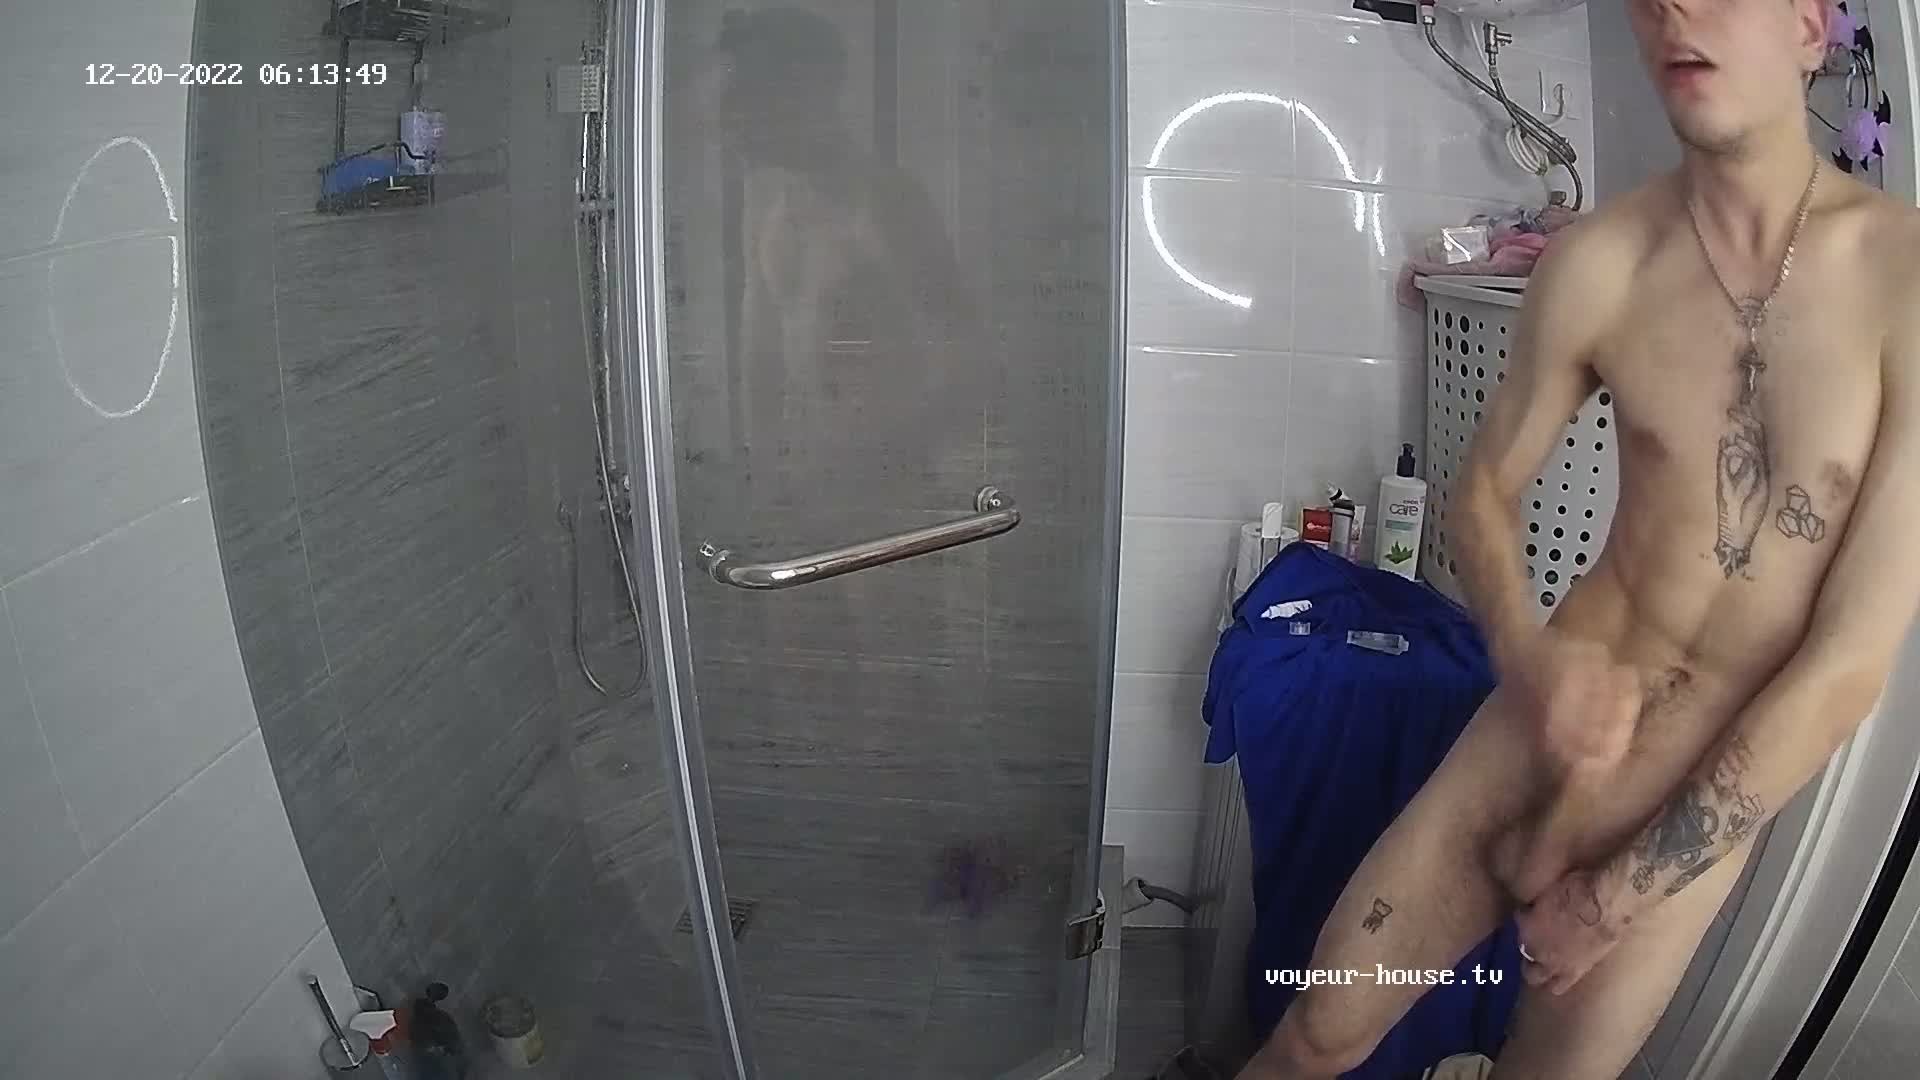 Artem jerking off in the bathroom 20 Dec 2022